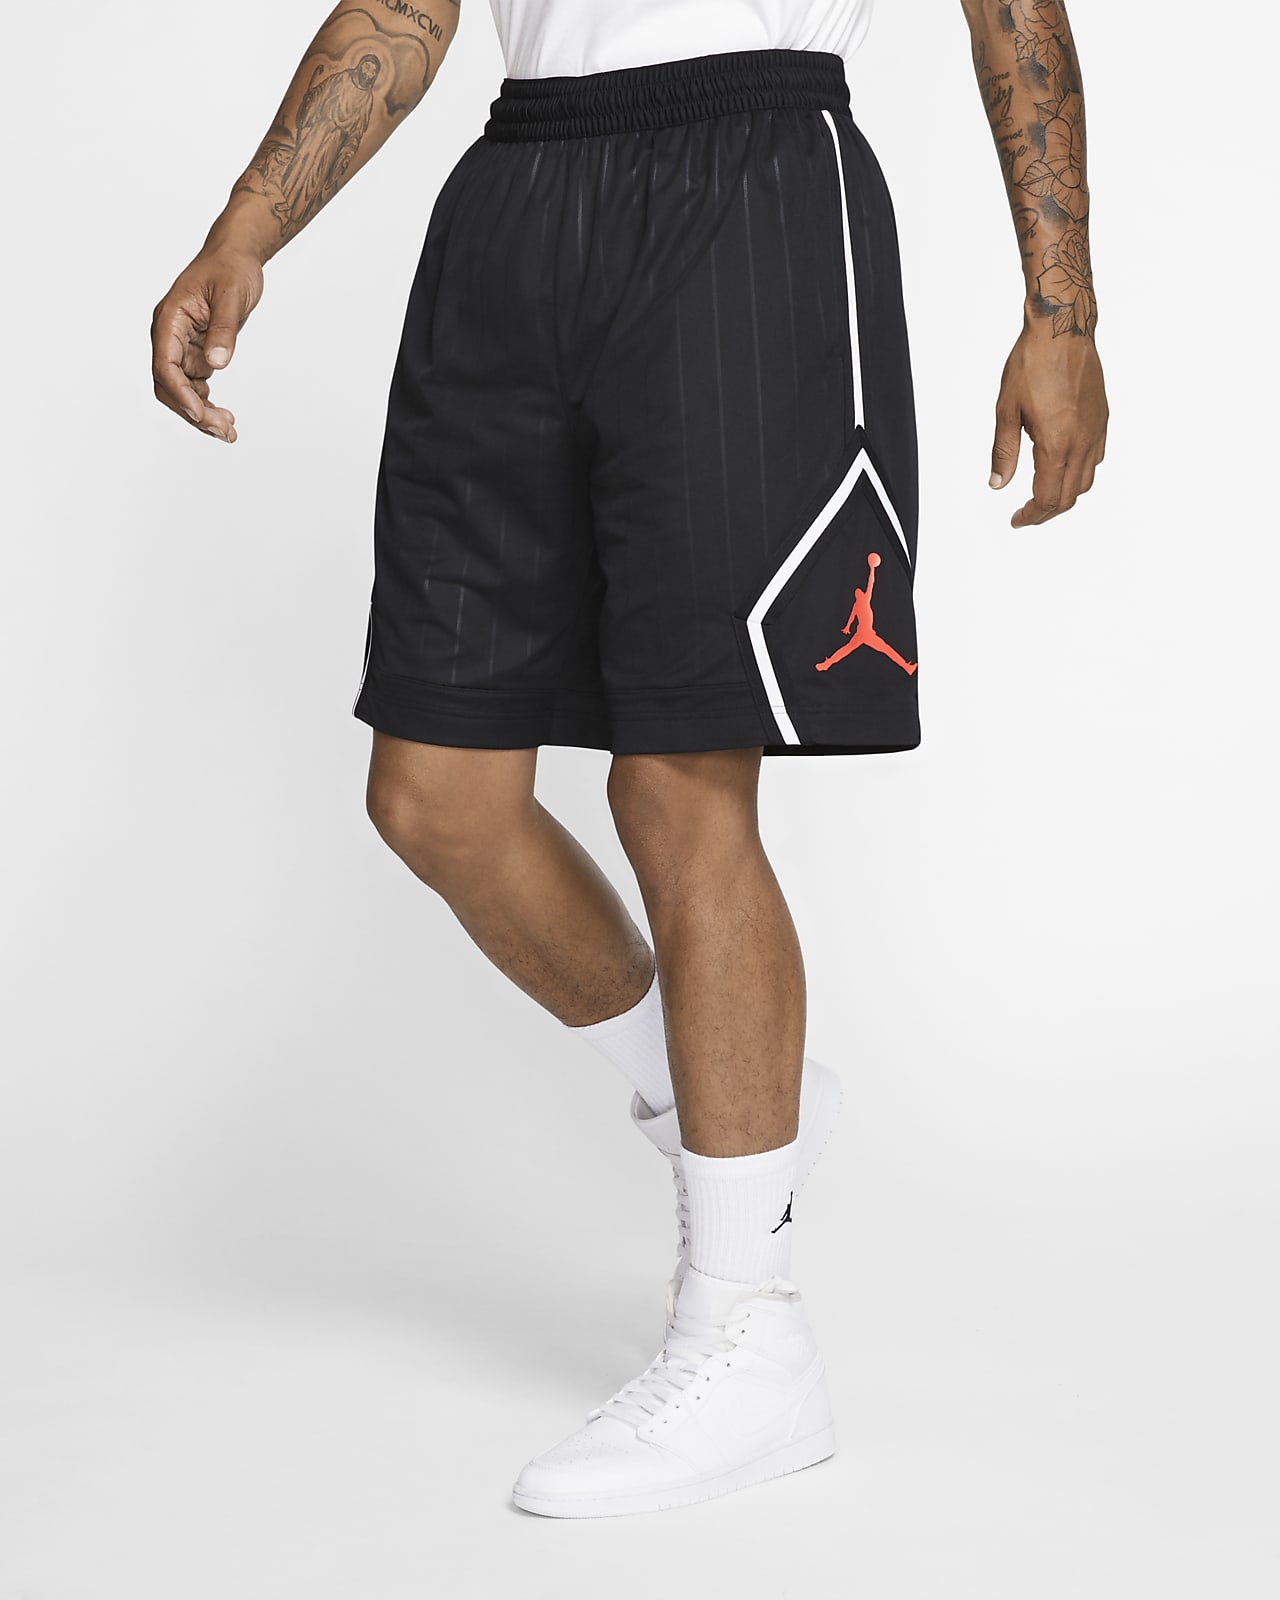 jordan jumpman shorts black